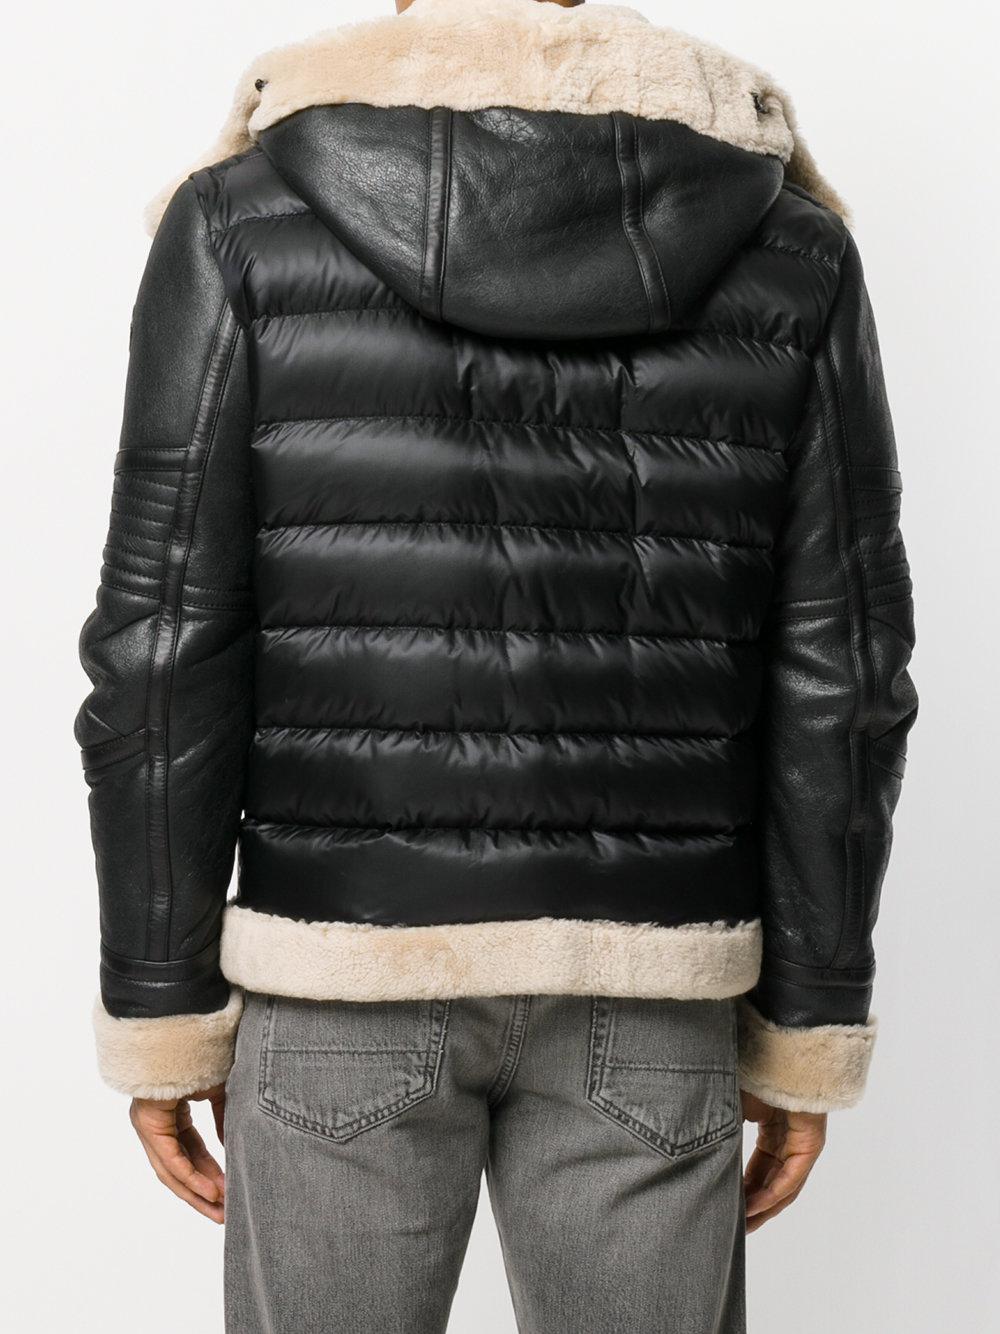 Moncler Leather Tancrede Jacket in Black for Men - Lyst